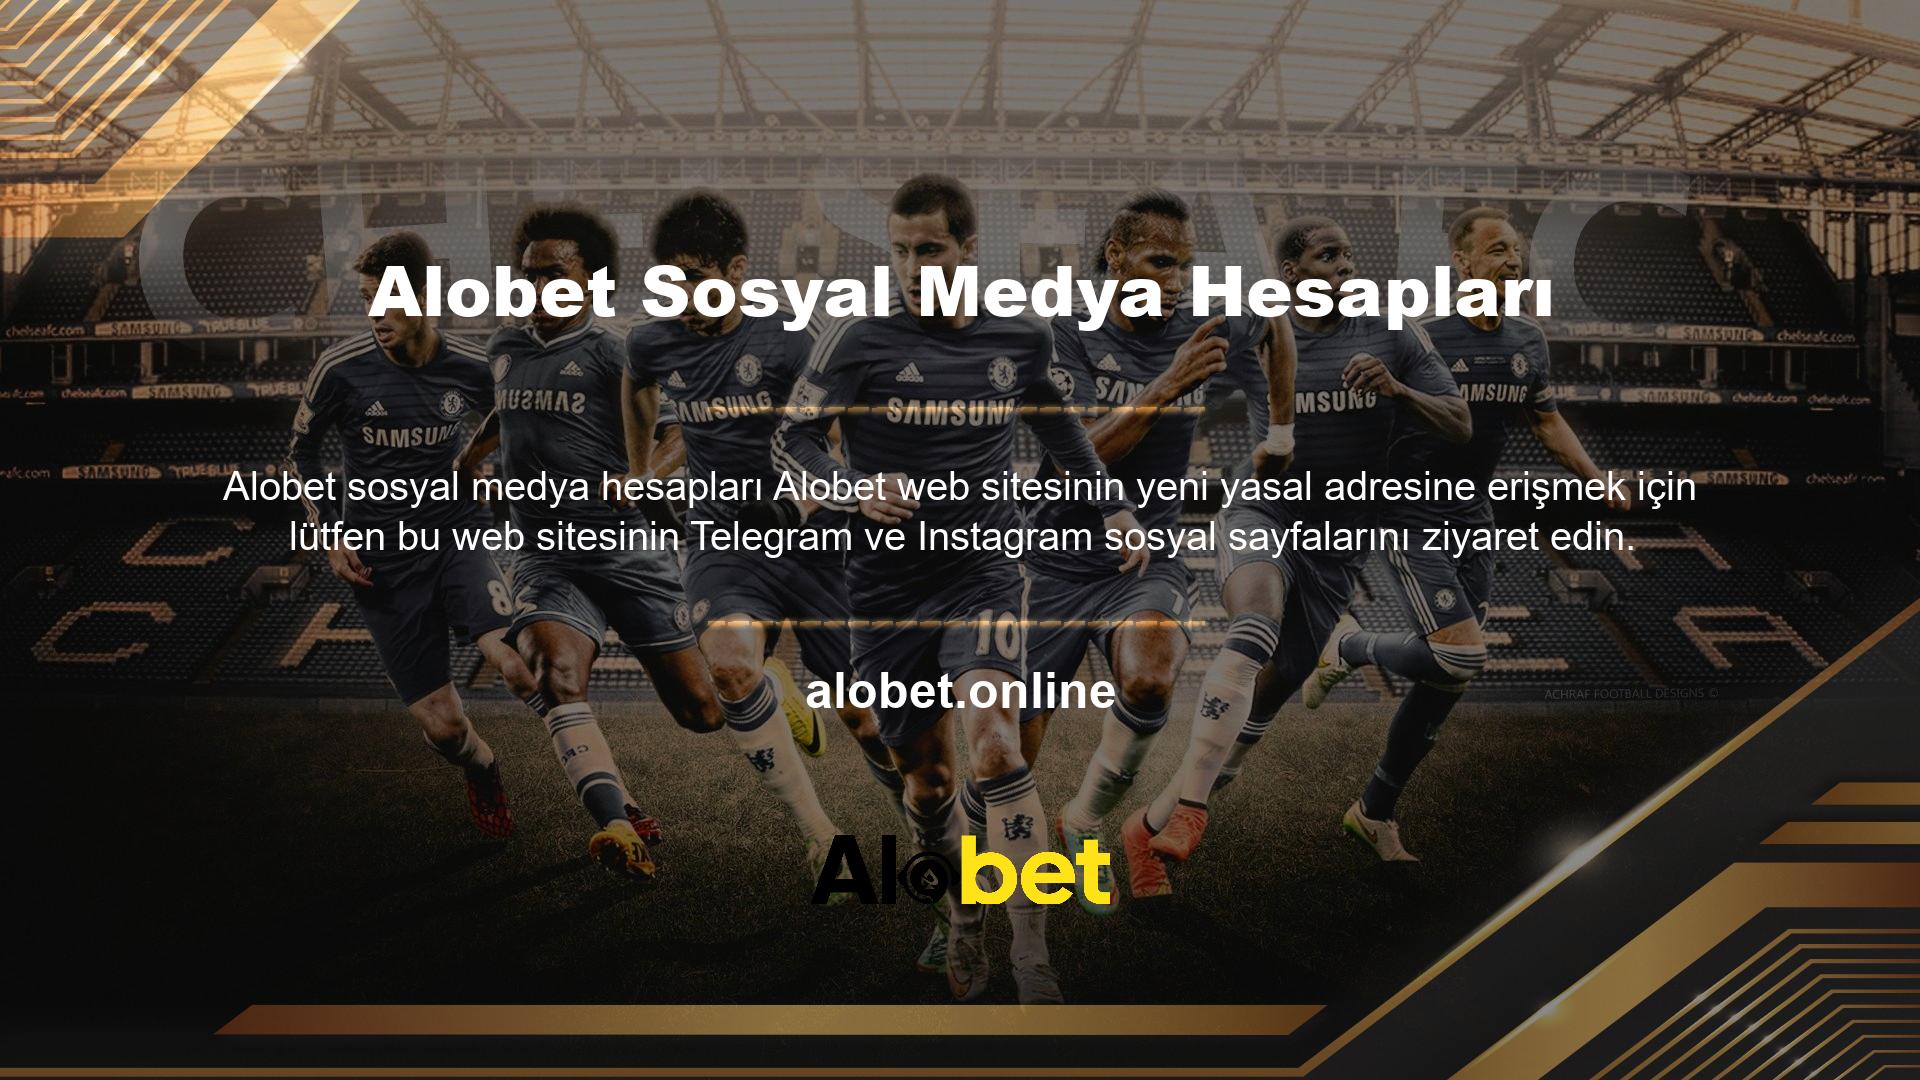 Alobet web sitesinin tamamı ve Alobet web sitesi bonusları hakkında daha fazla bilgi edinmek için Alobet Instagram ve Telegramda takip etmenizi öneririz